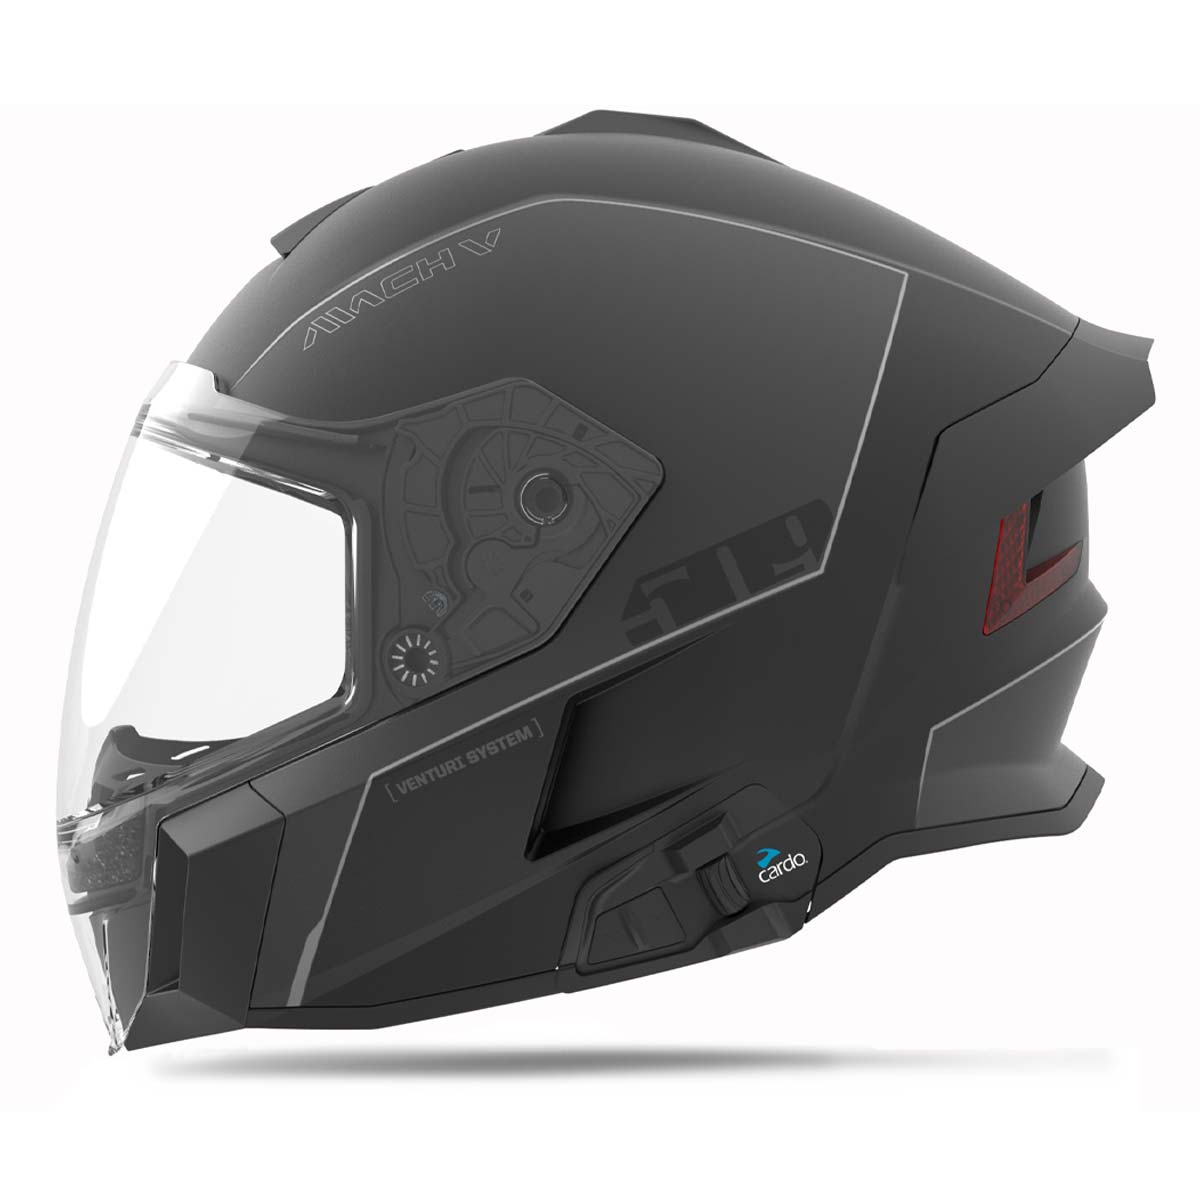 Mach V Commander Helmet – 509